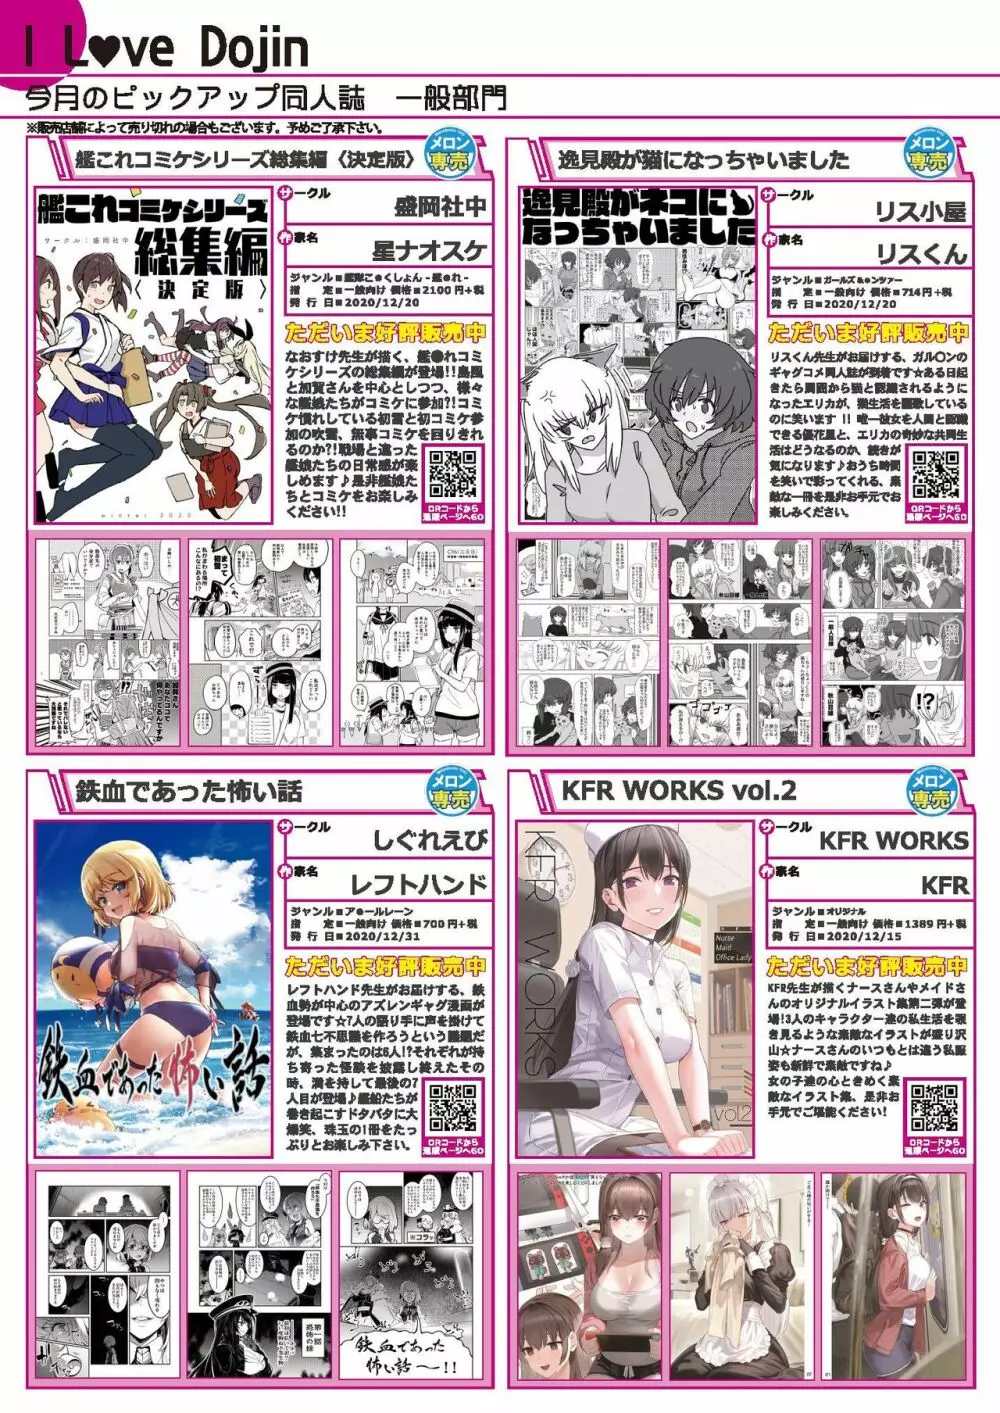 月刊うりぼうざっか店 2020年12月25日発行号 26ページ